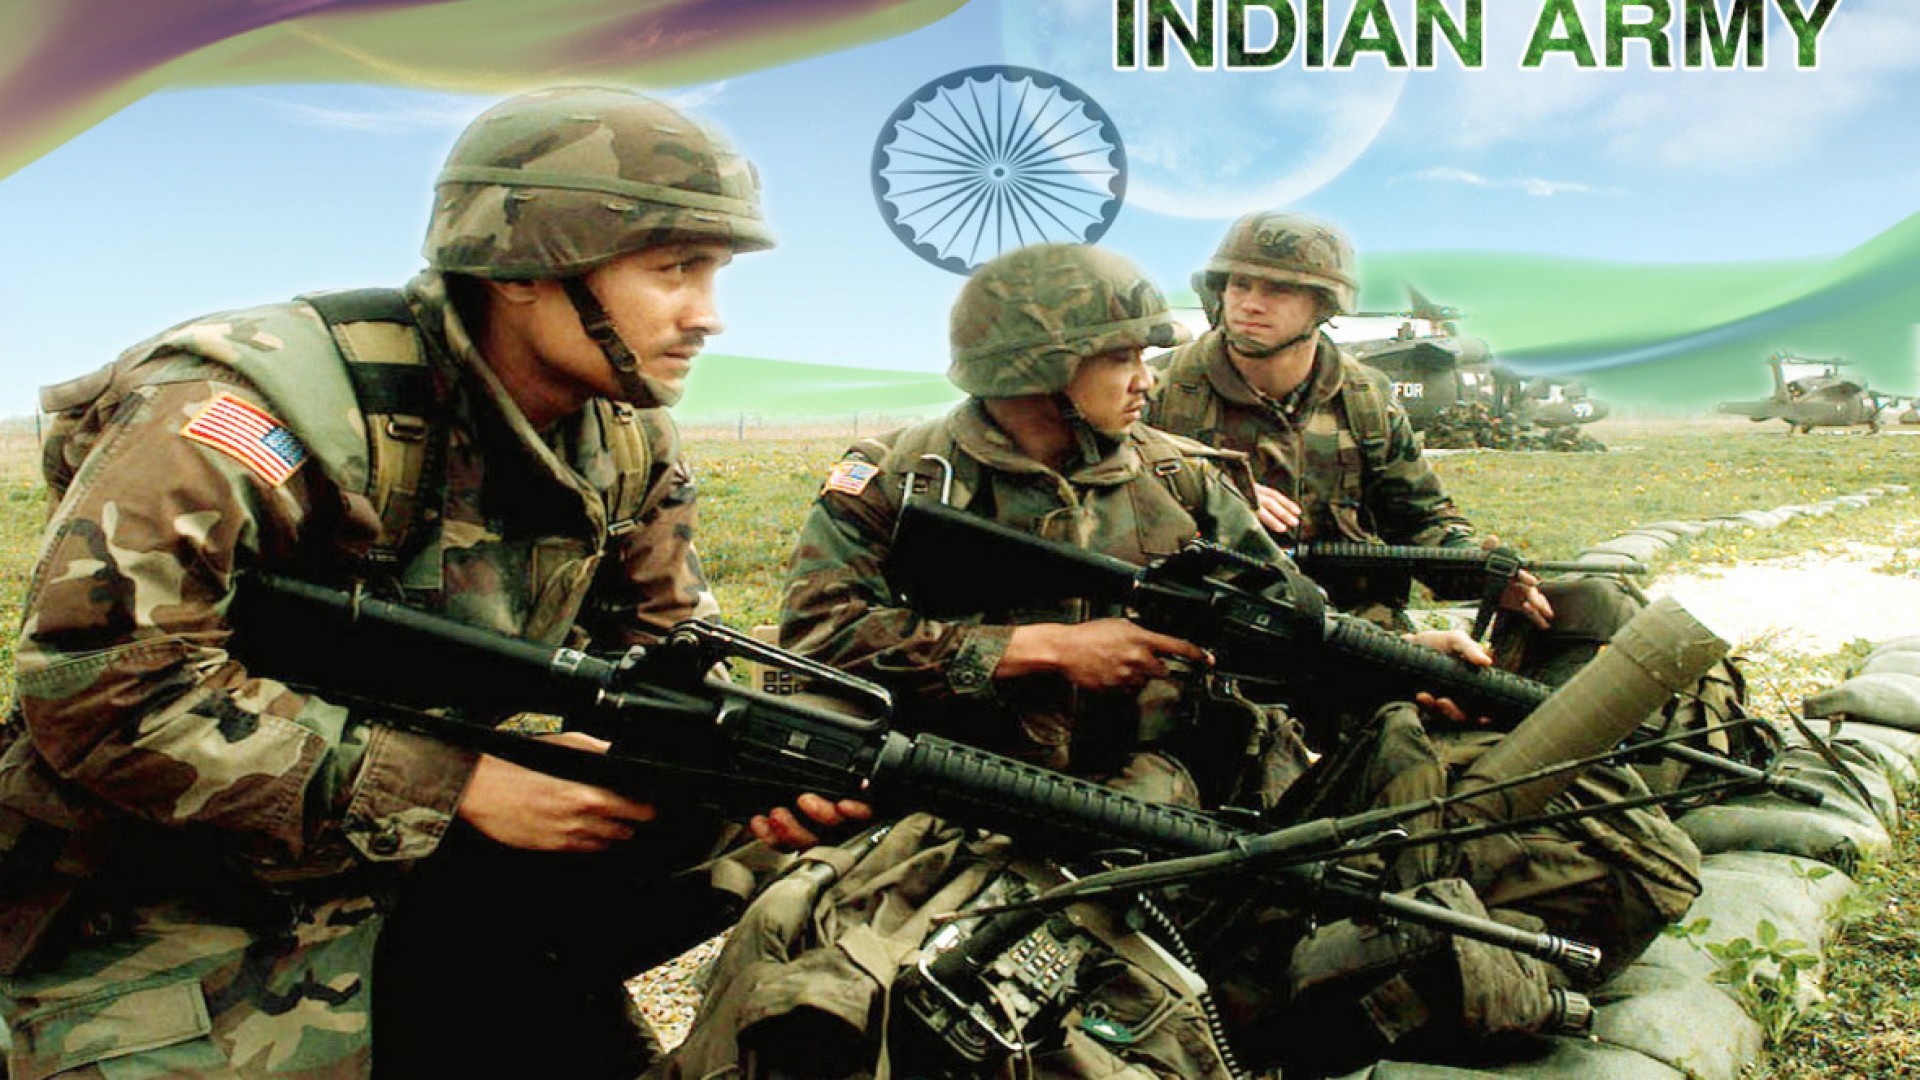 1920x1080 Indian army desktop hd wallpaper - HDWallpapersin.com